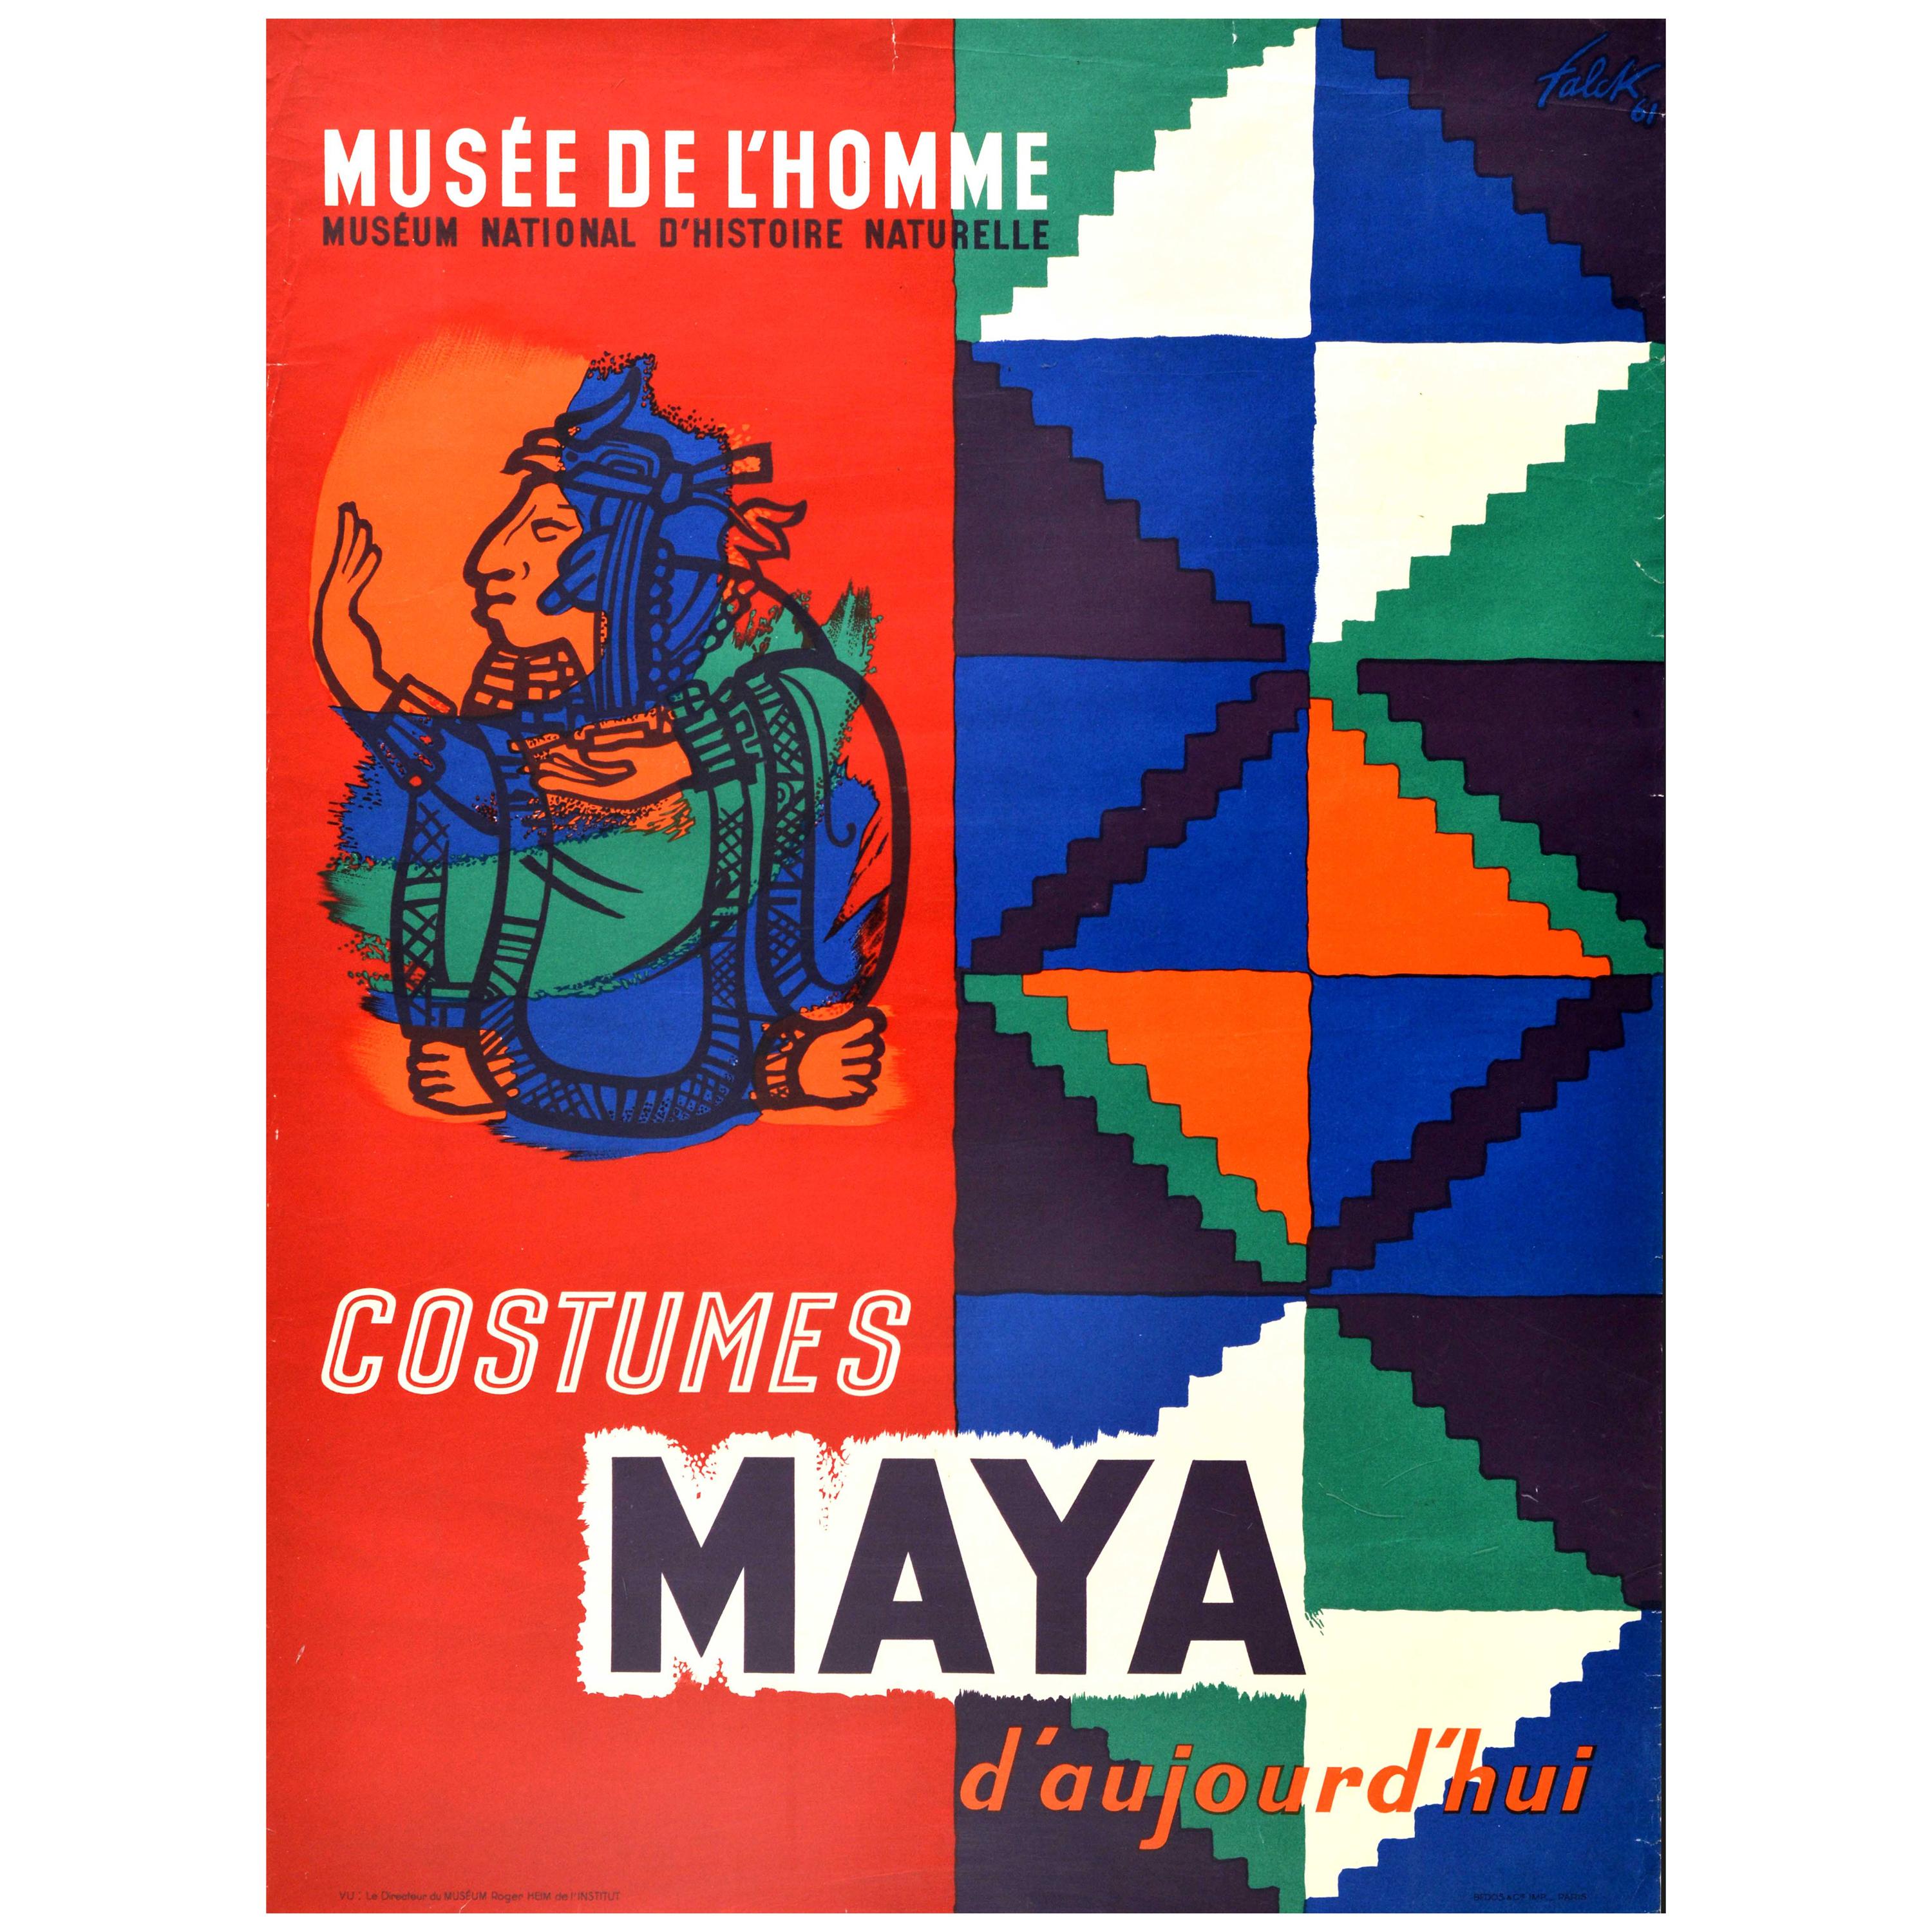 Original Original Vintage Ausstellungsplakat Musee De L'Homme Kostüme Maya Design Geschichte